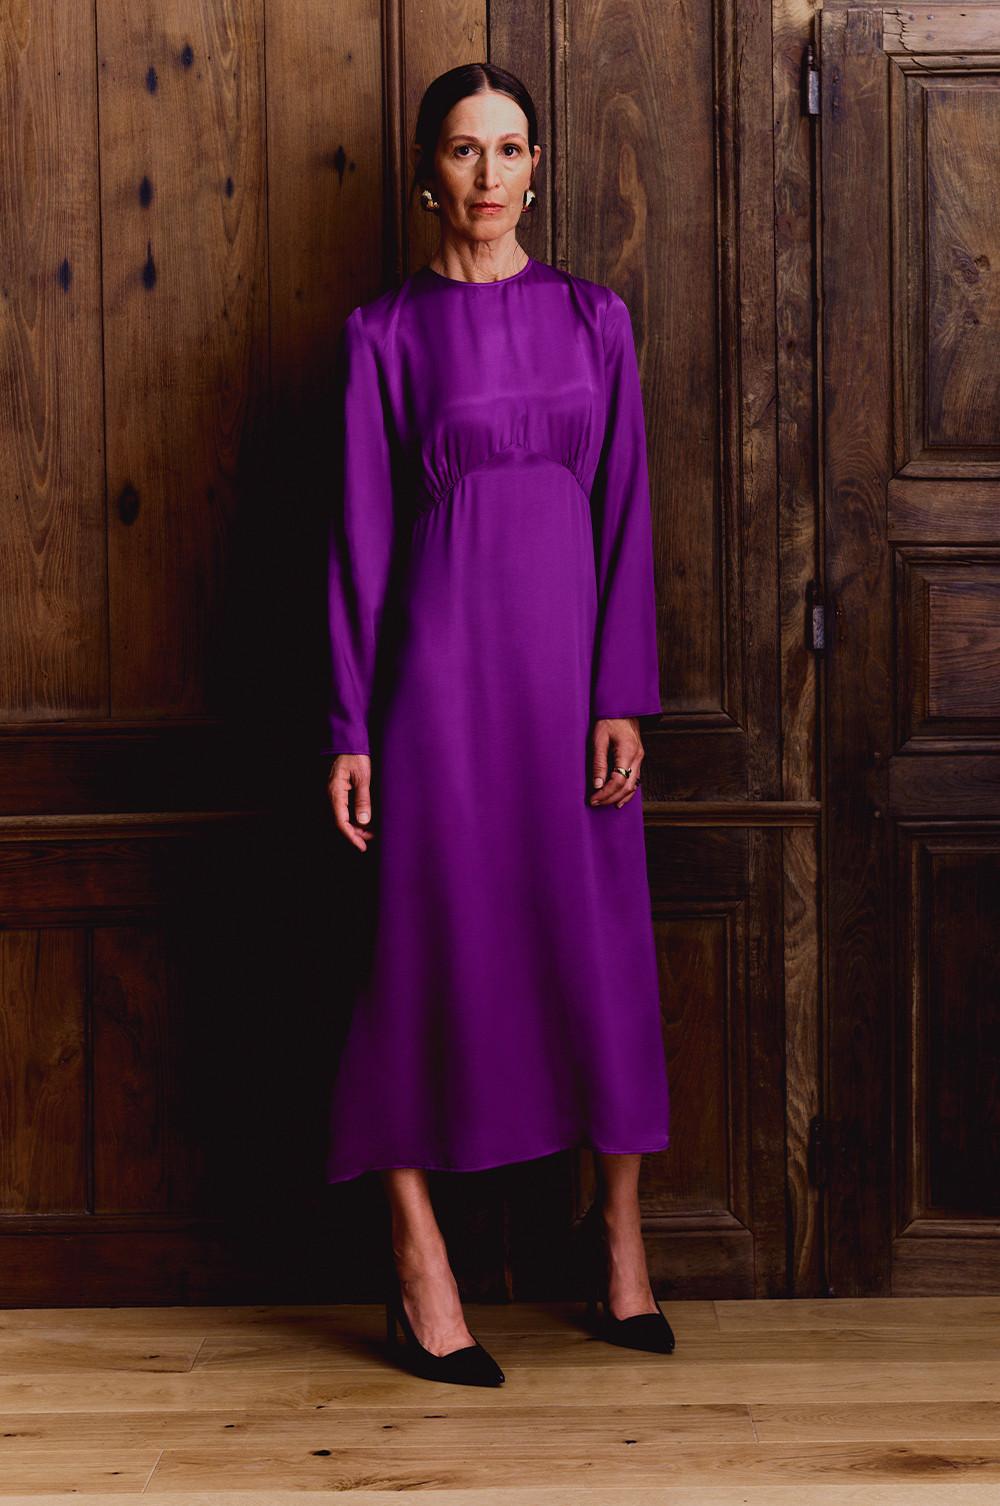 model wears purple satin dress